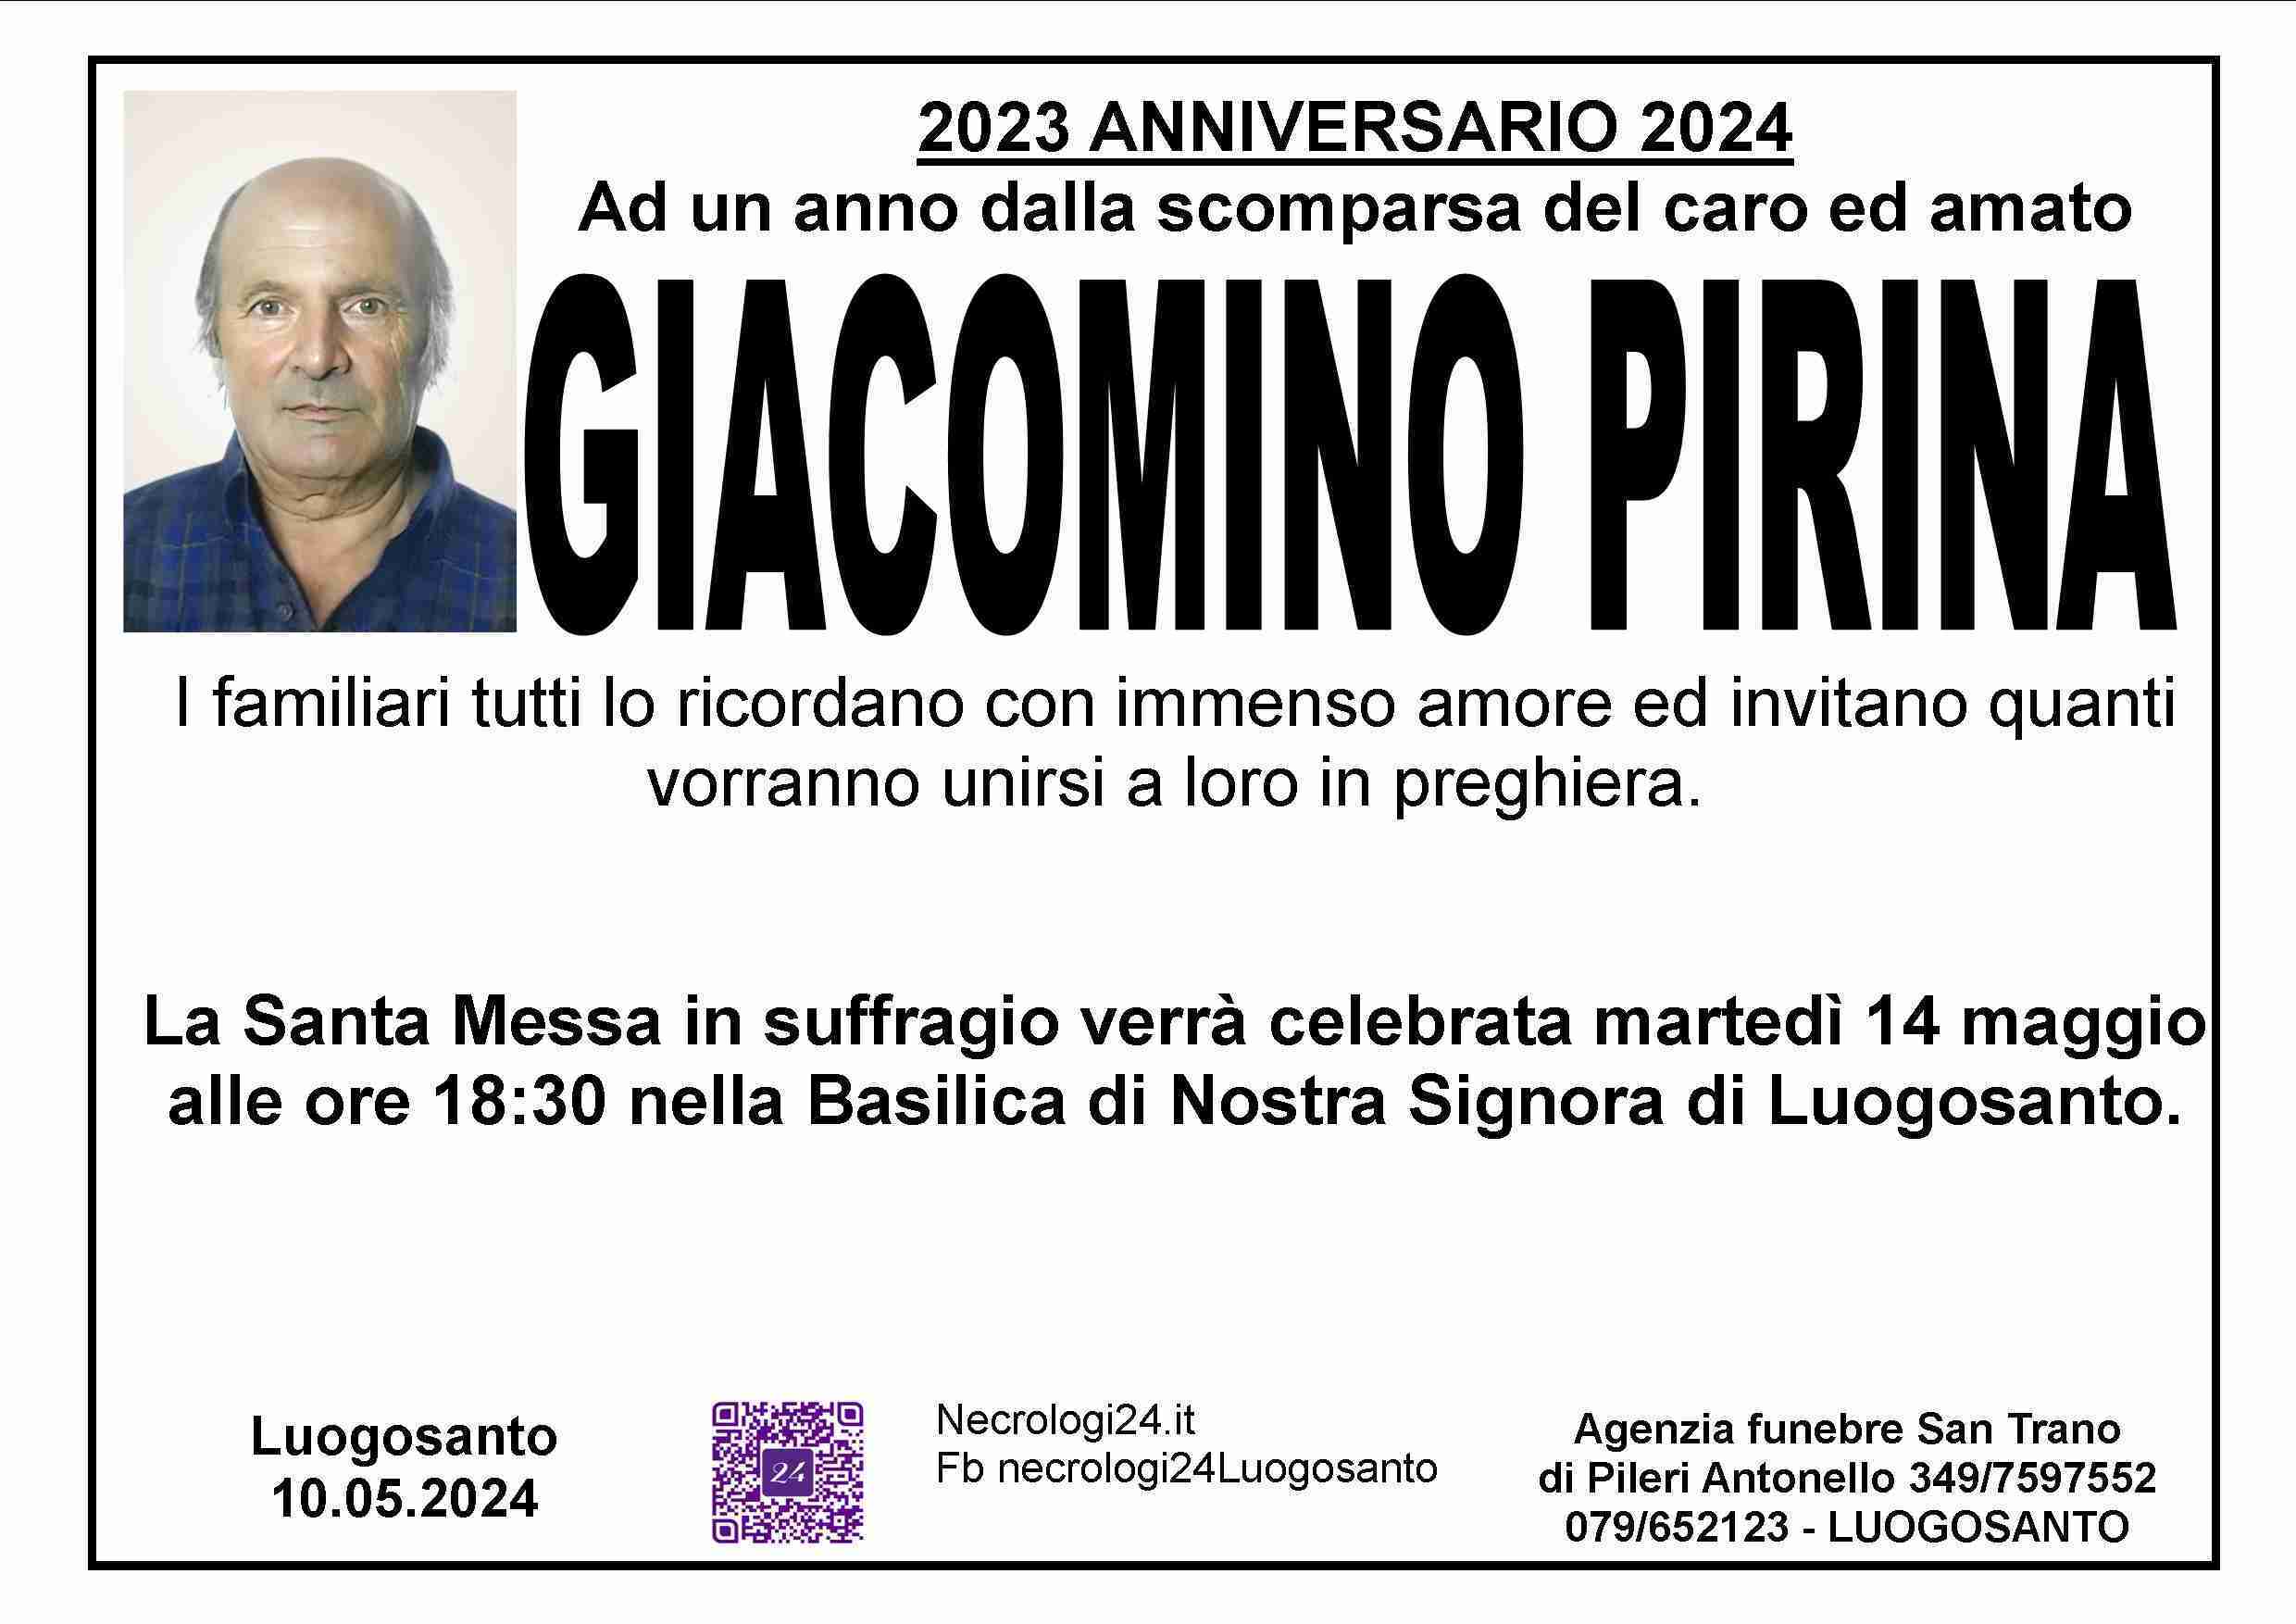 Giacomino Pirina